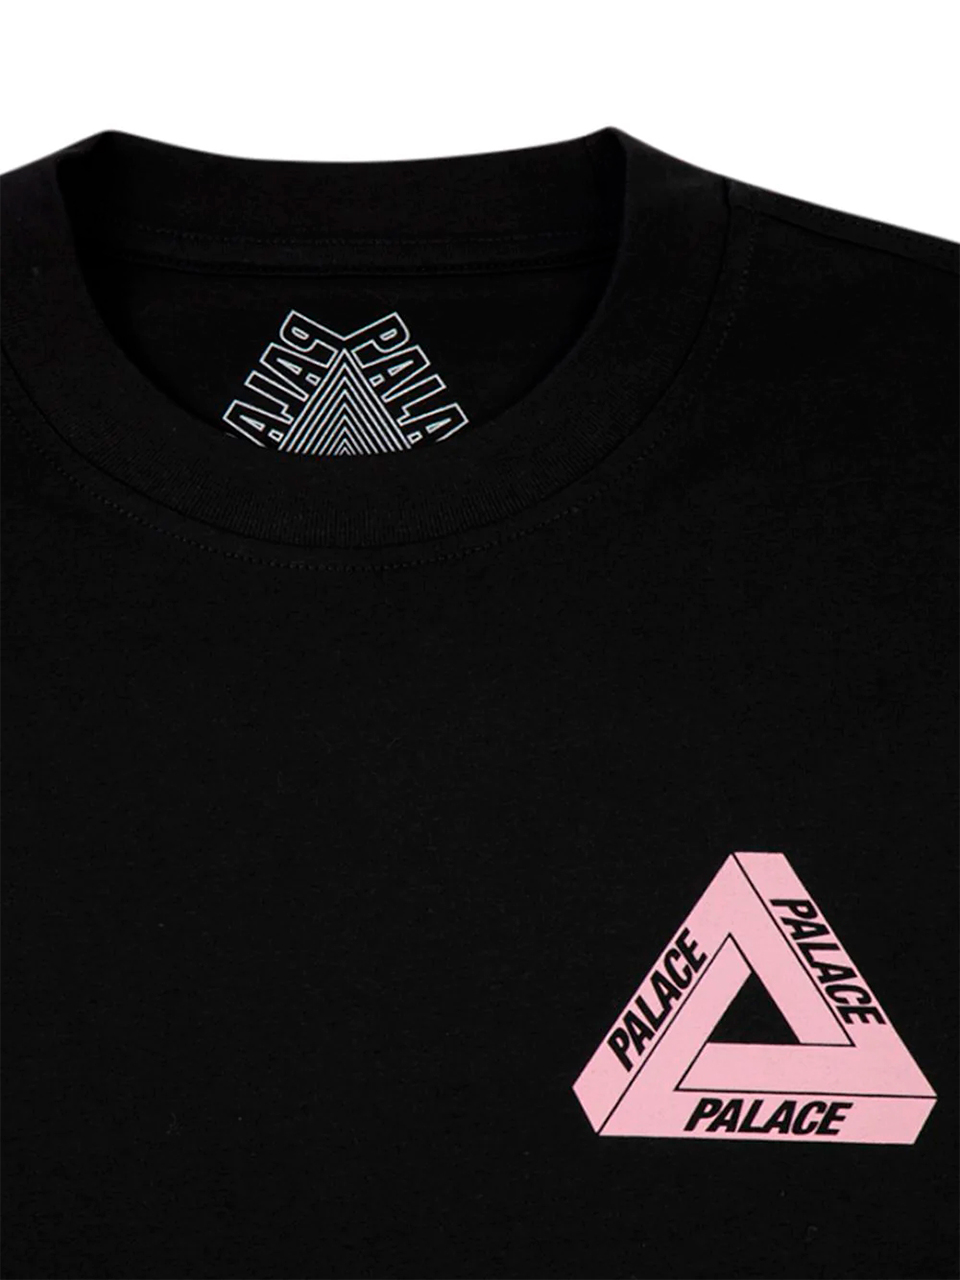 Imagem de: Camiseta Palace Preta Tri-To-Help Logo Rosa Quartzo